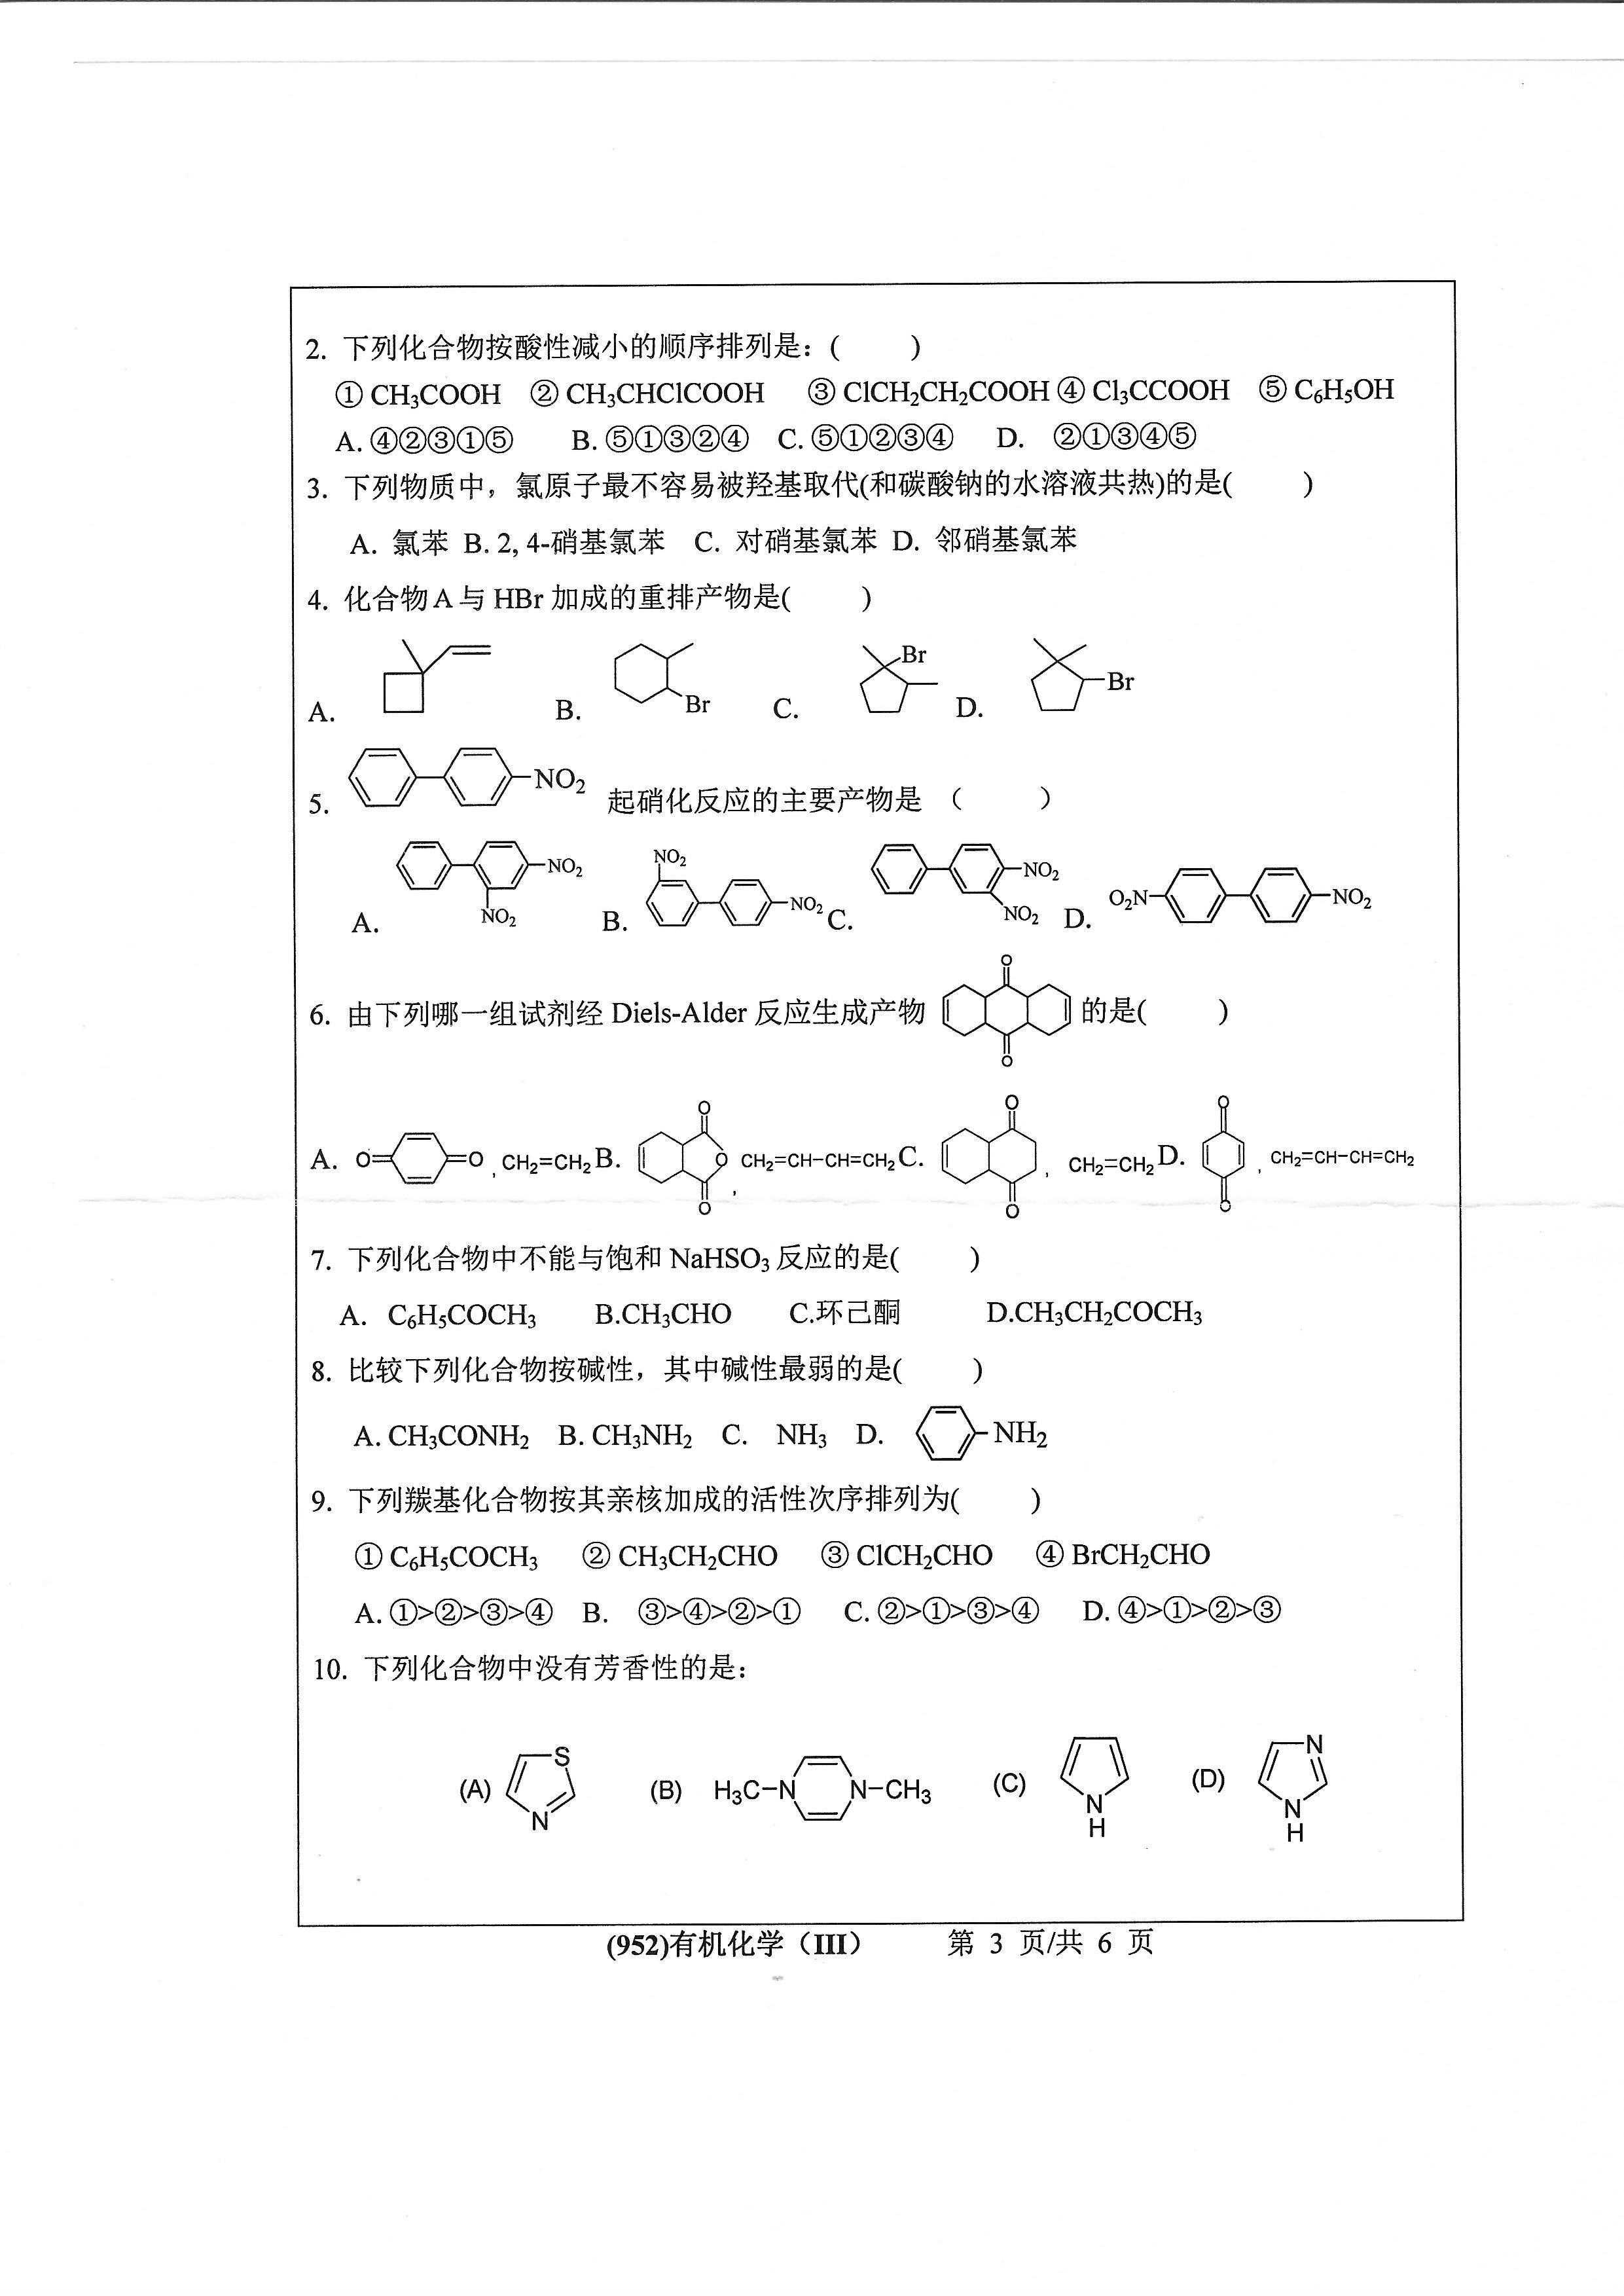 952有机化学（III）2020年考研初试试卷真题（浙江工业大学）